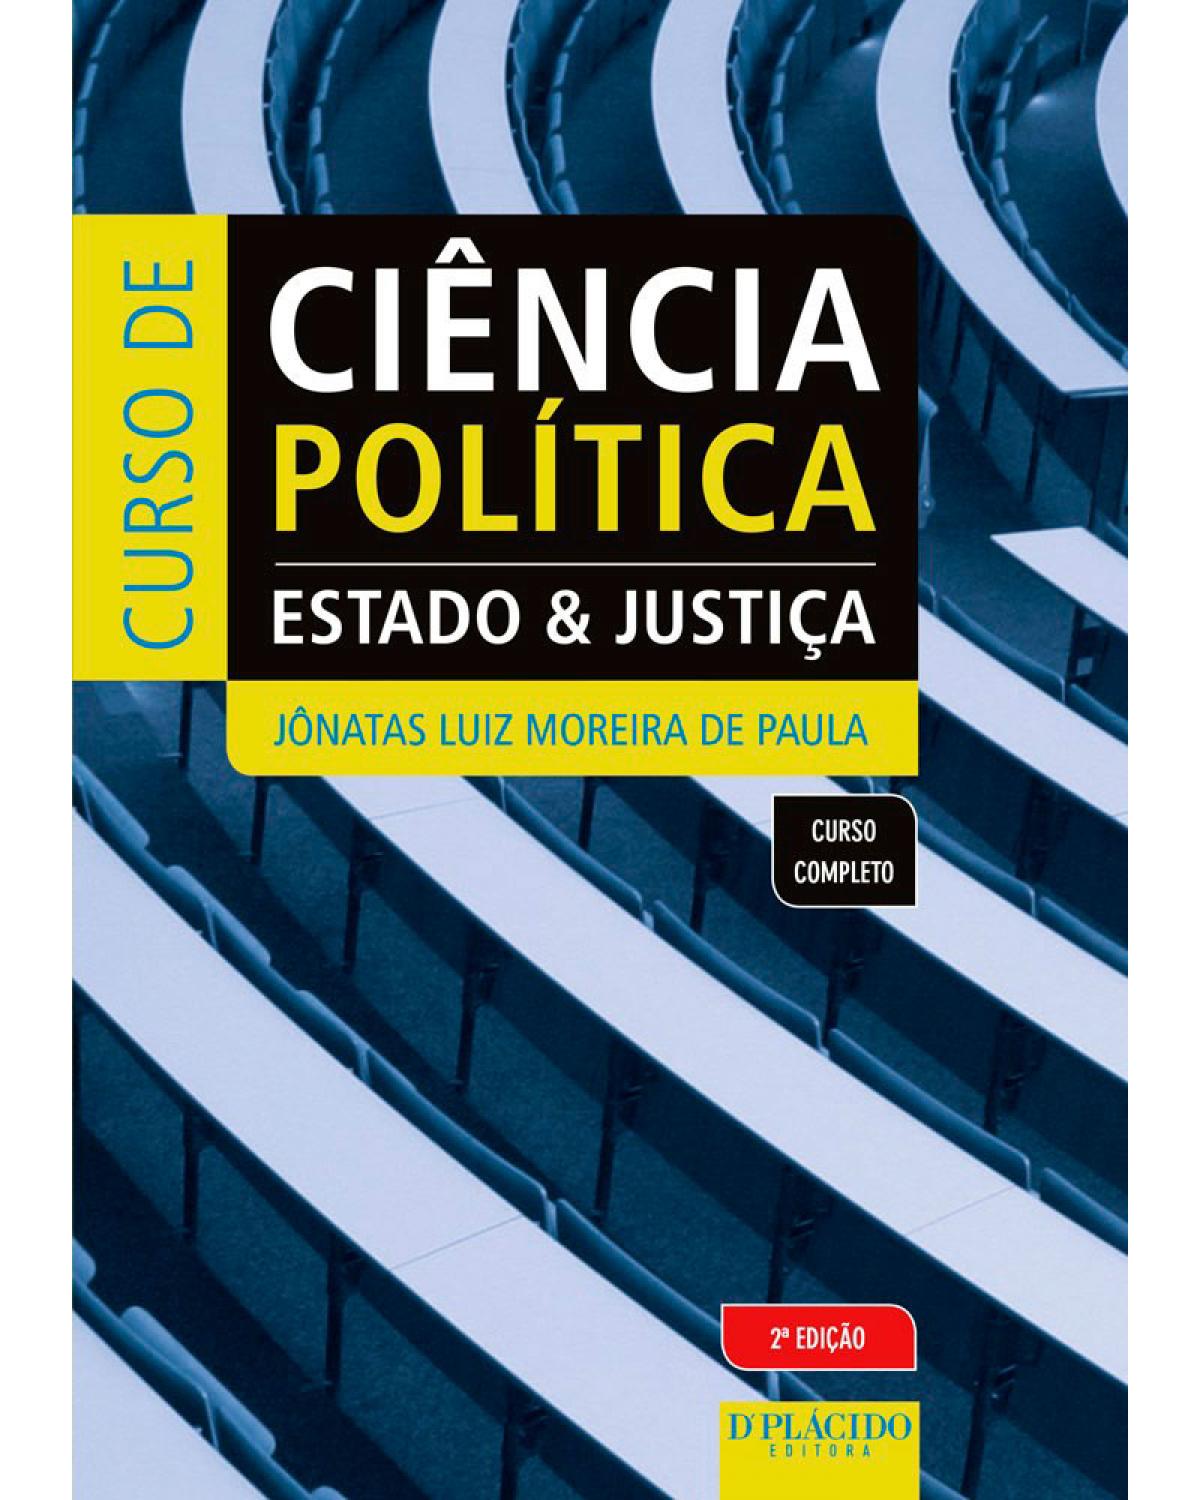 Curso de ciência política - Estado e justiça - 2ª Edição | 2015